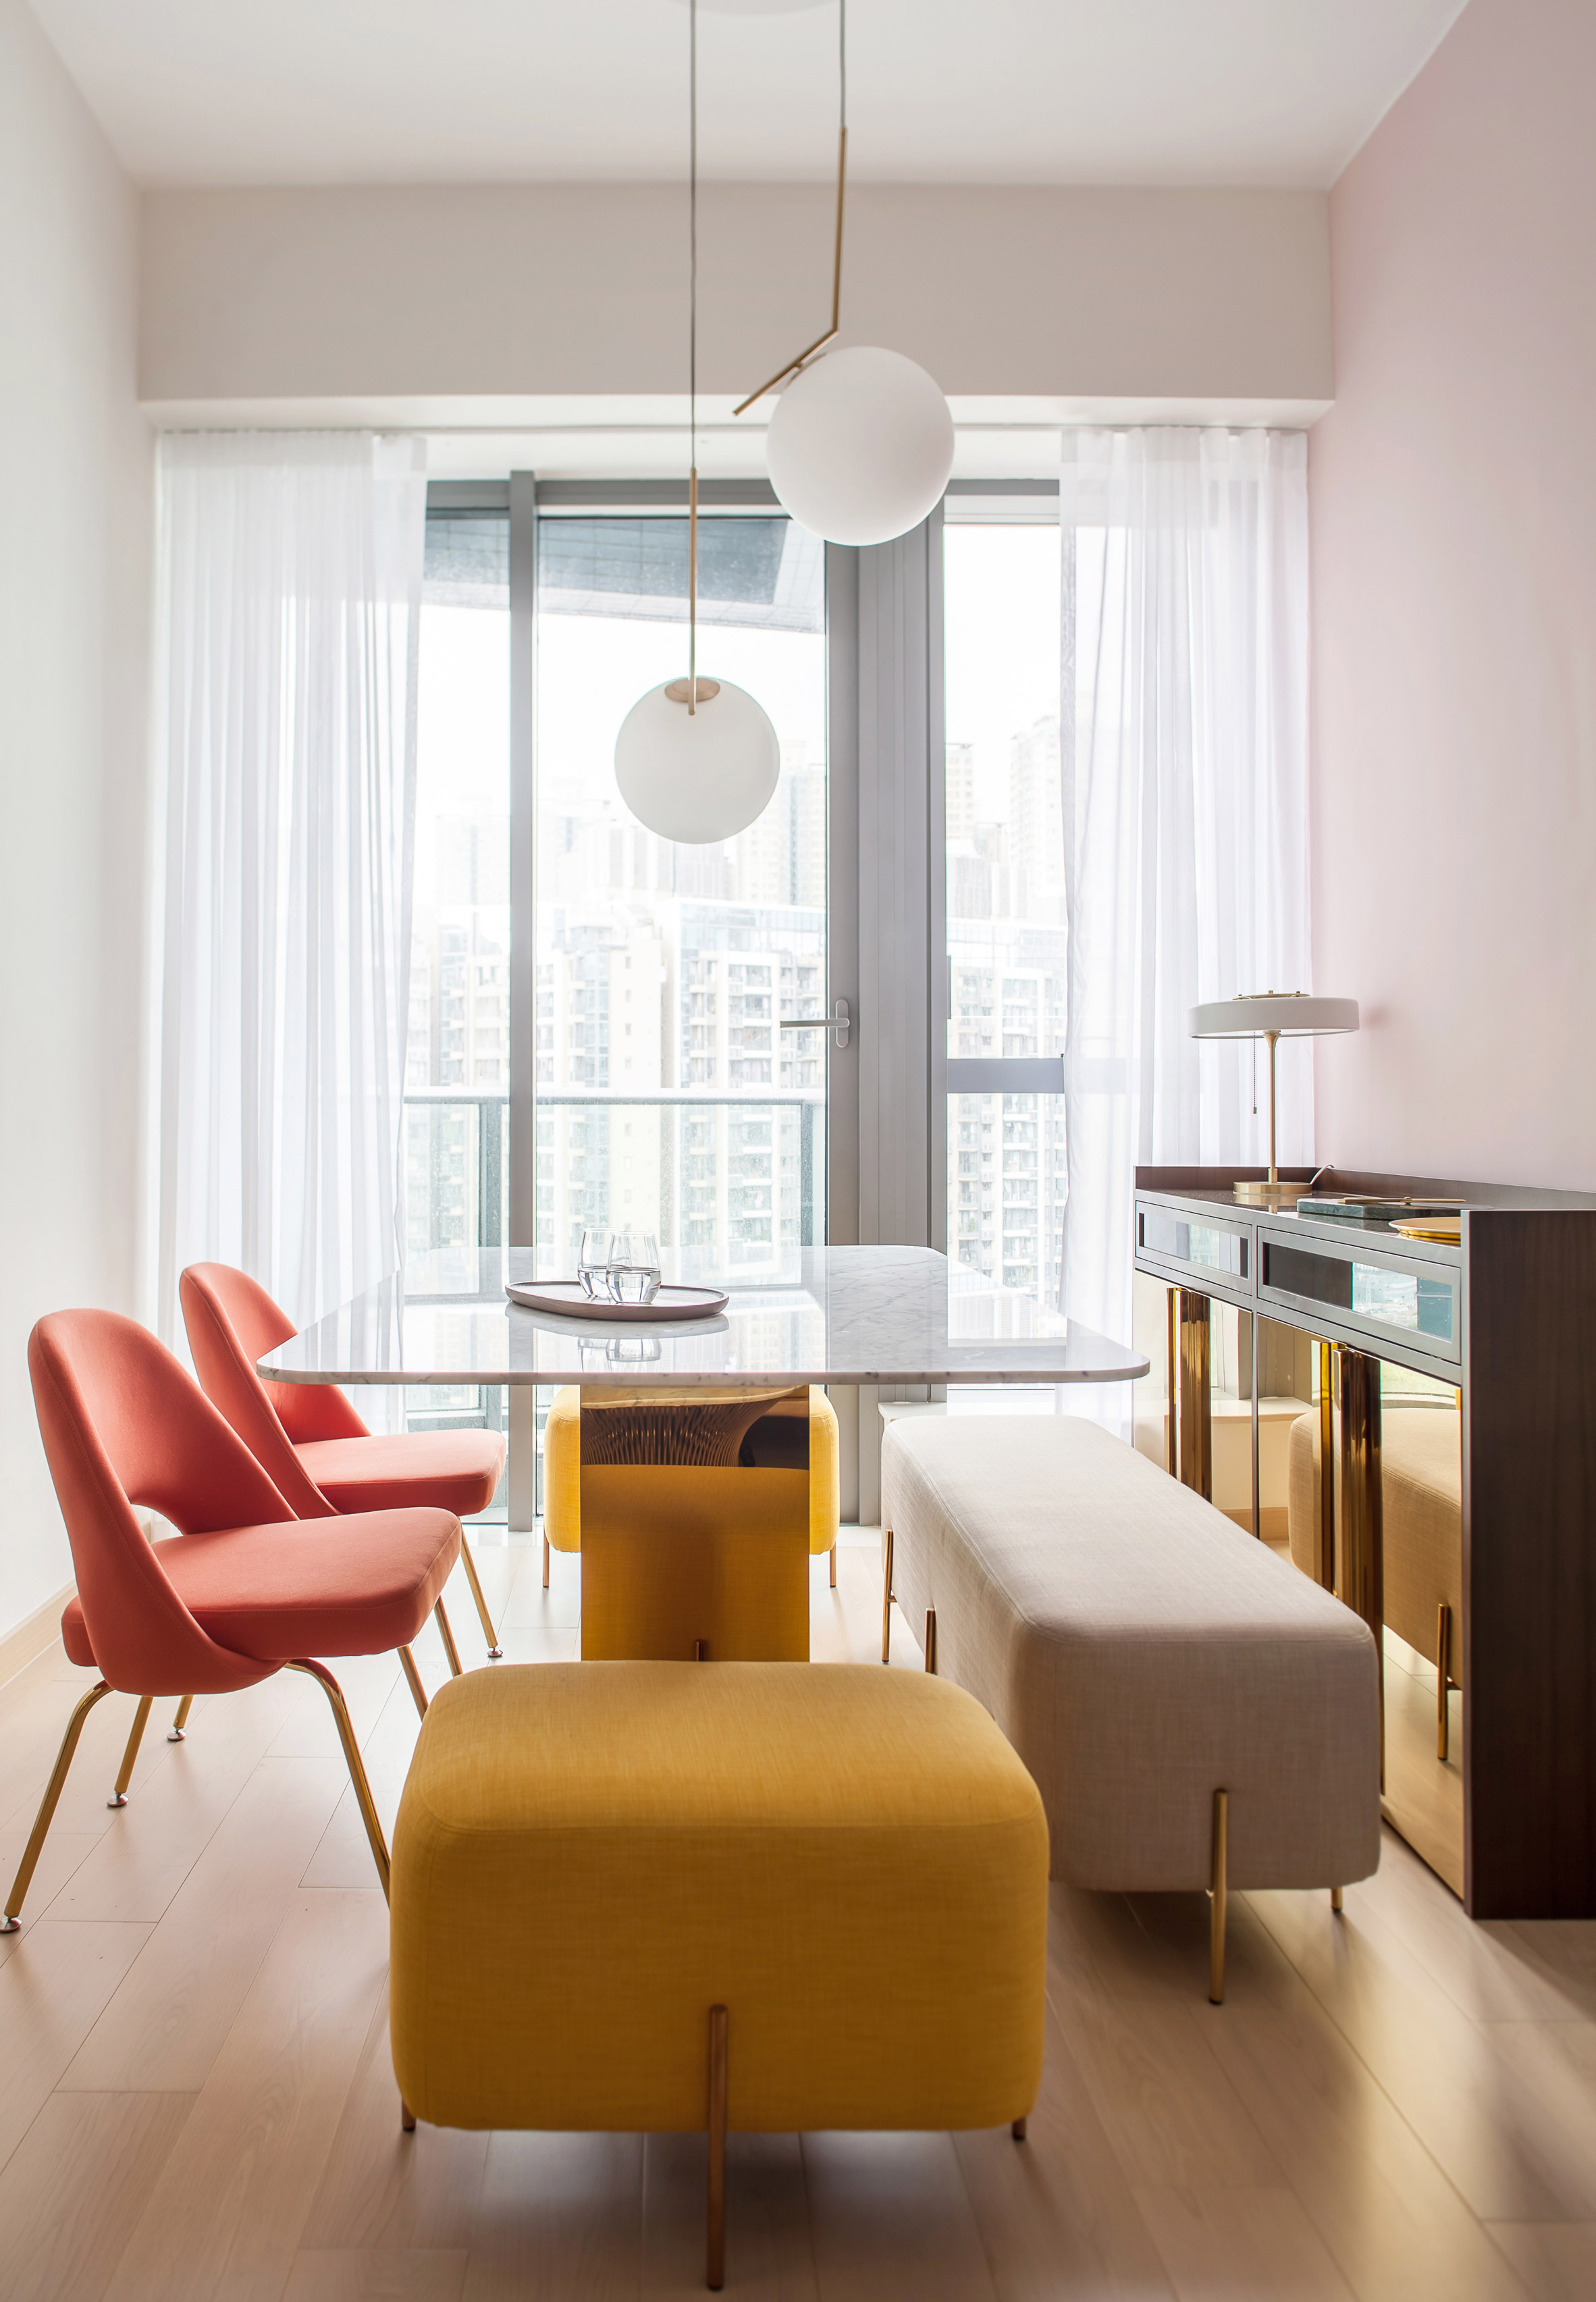 Thiết kế căn hộ với tường và đồ nội thất có màu rực rỡ dành riêng cho chủ nhân thiết kế thời trang - Ảnh 3.